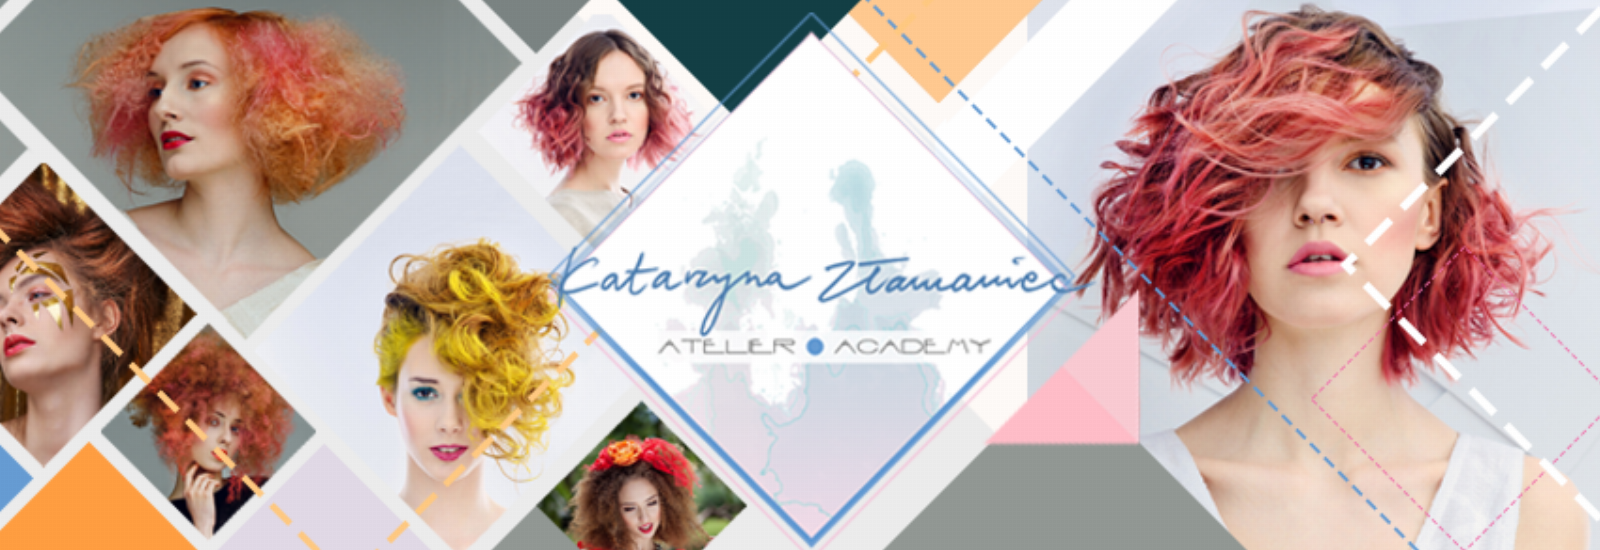 Atelier & Academy Katarzyna Złamaniec